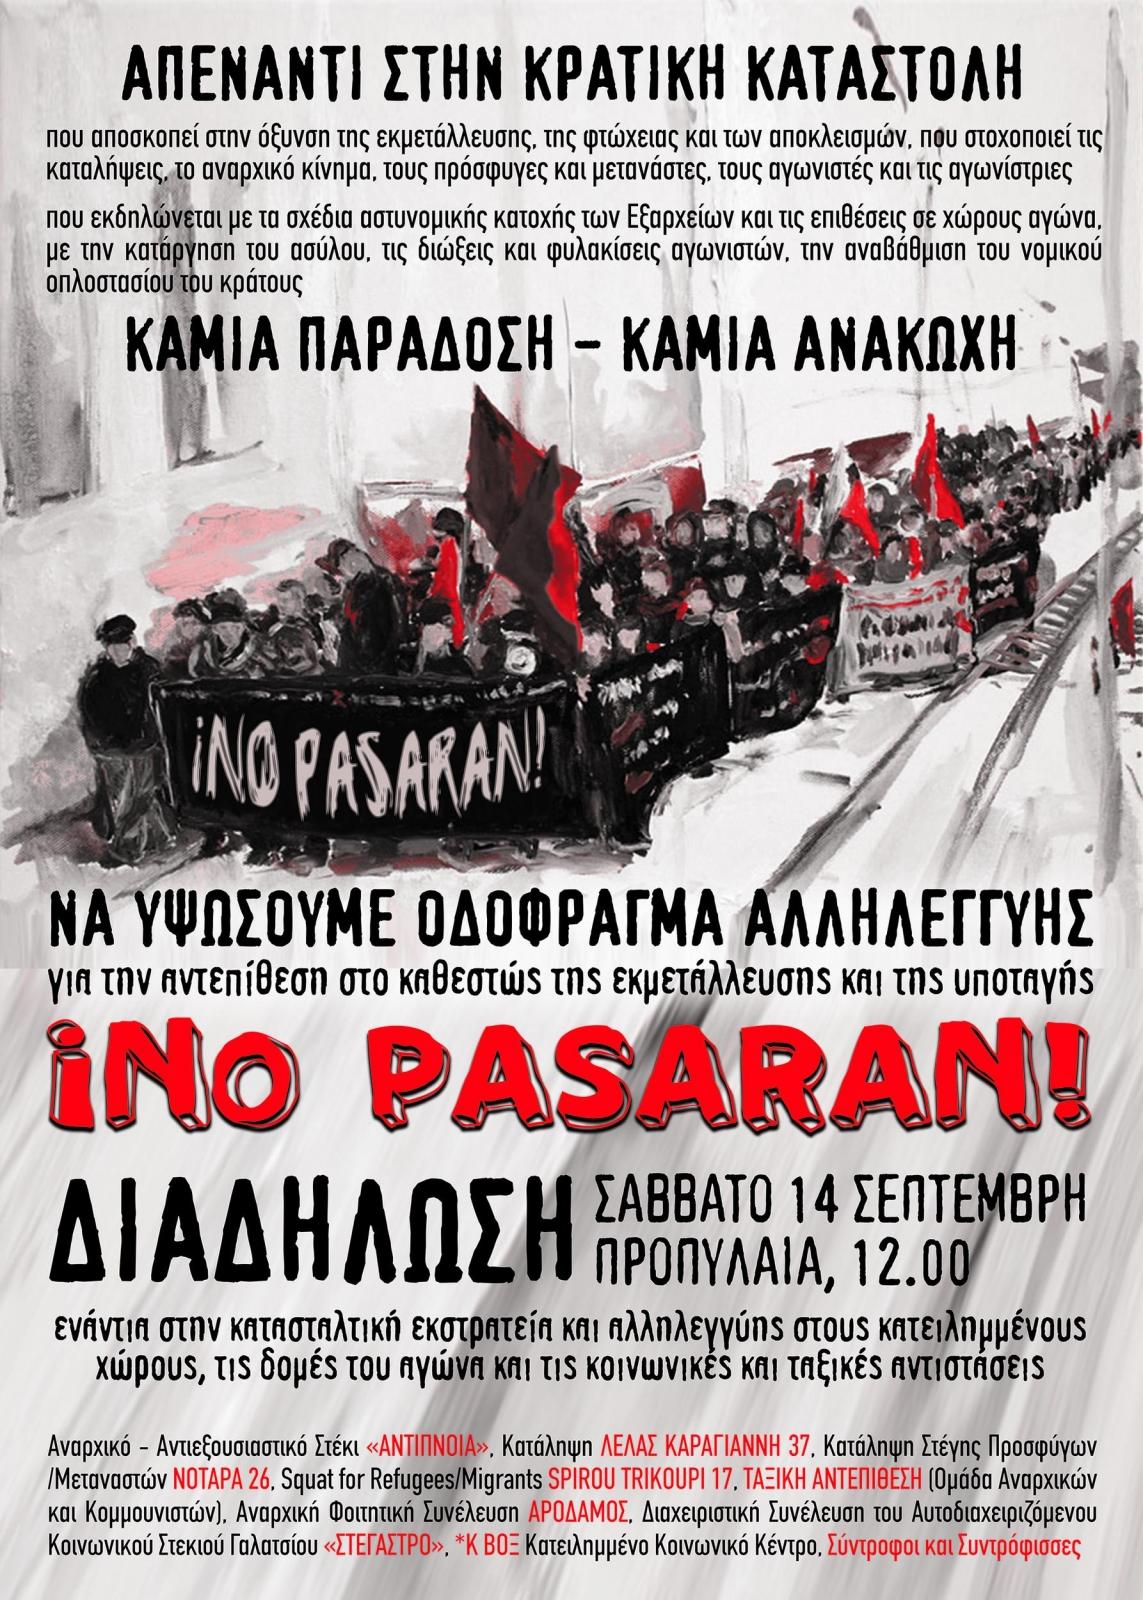 Athènes, Grèce: Face à la répression étatique – No pasaran !